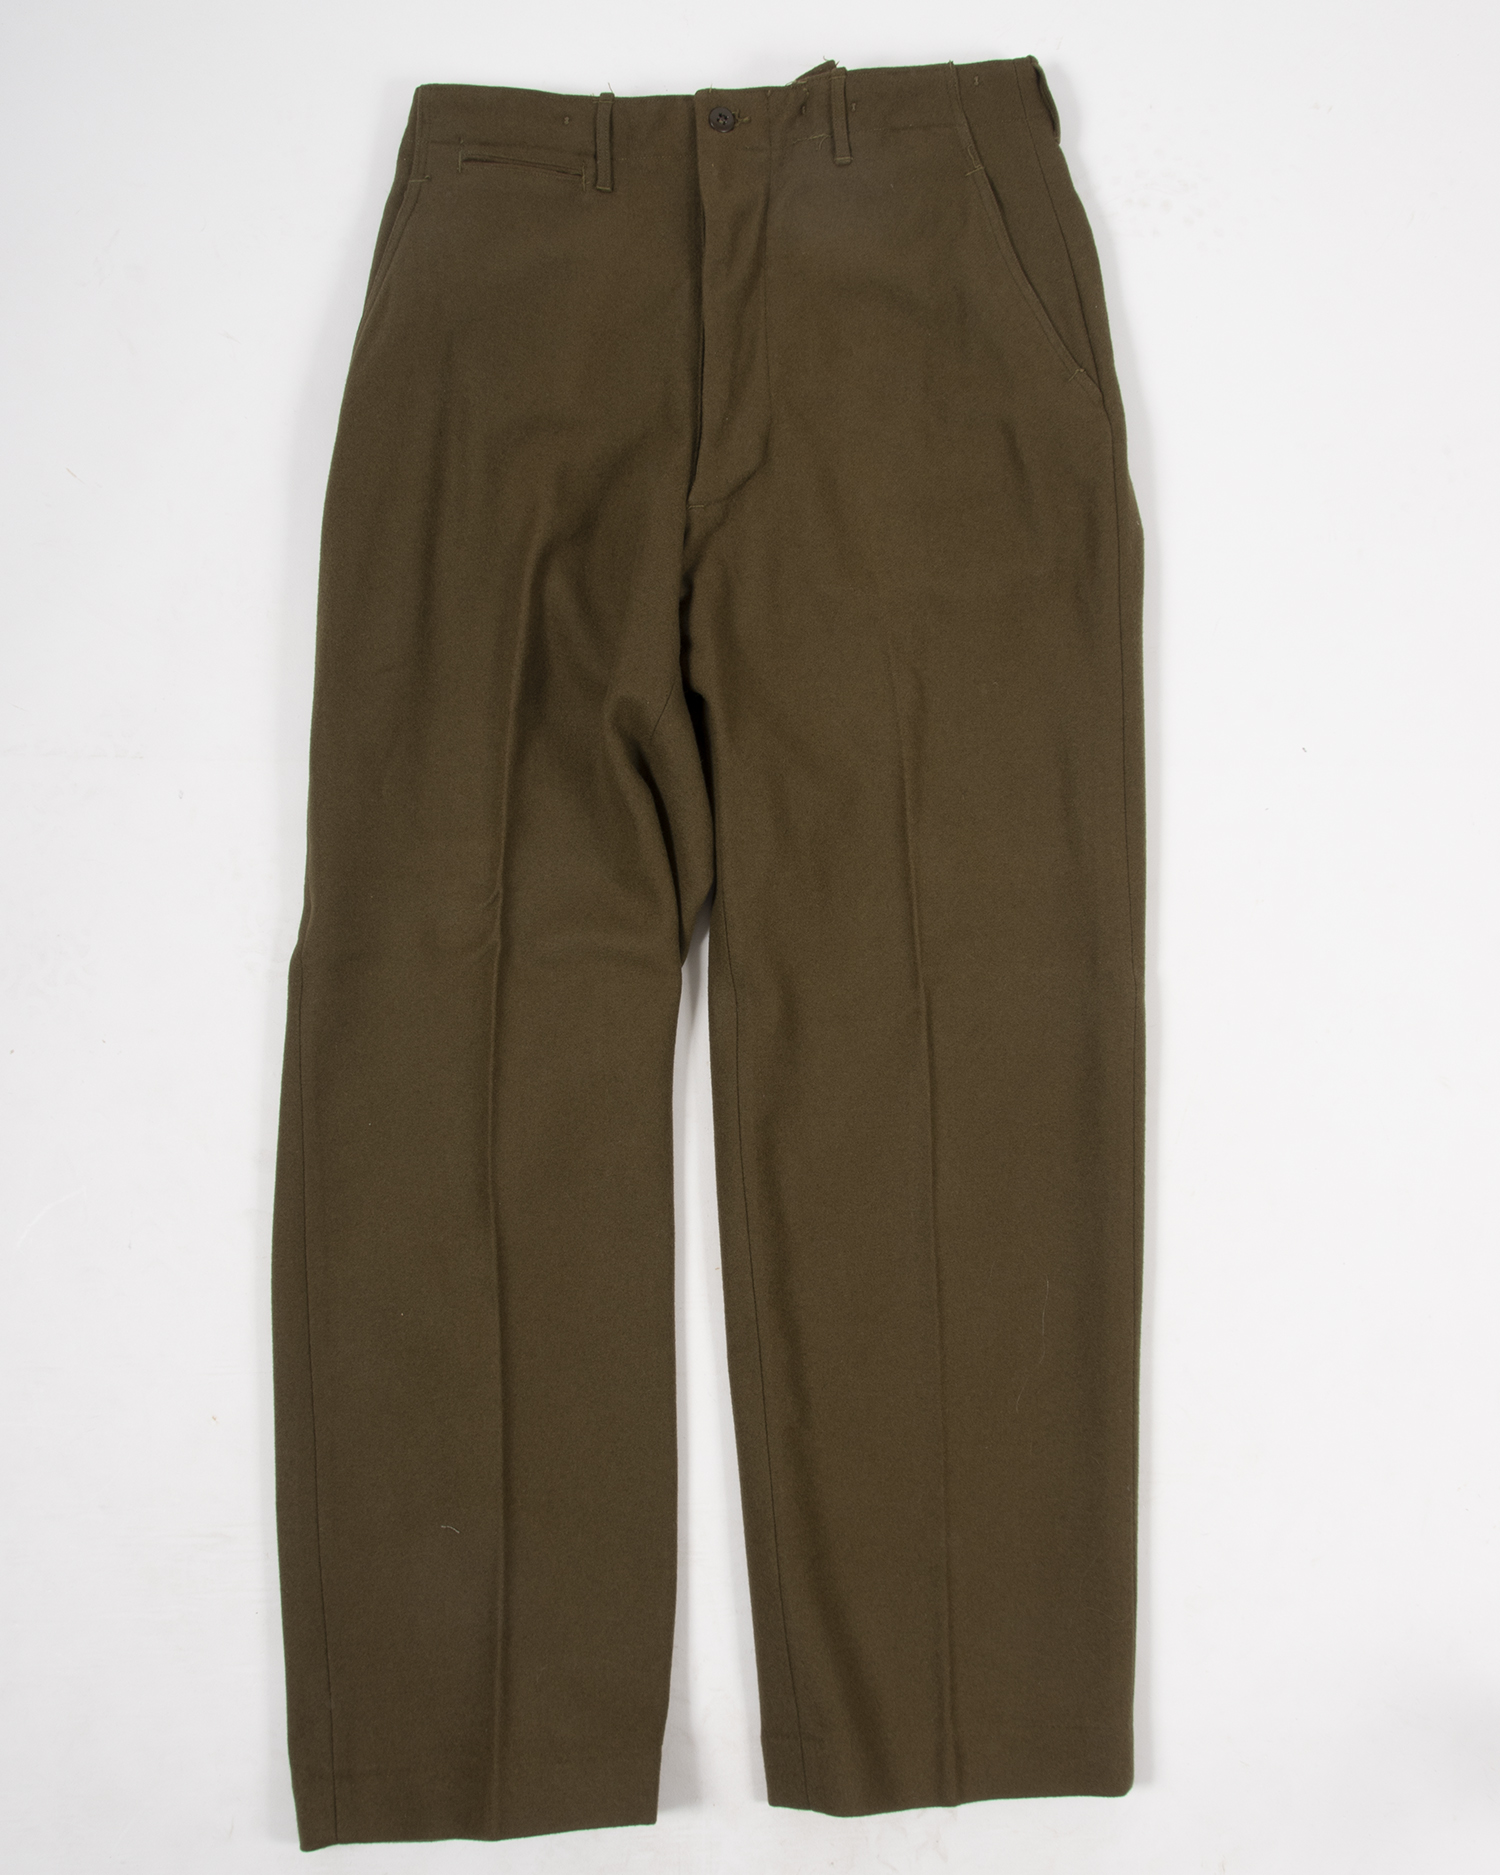 US WWII Wool Field Trousers, size 36 x 33, unissued